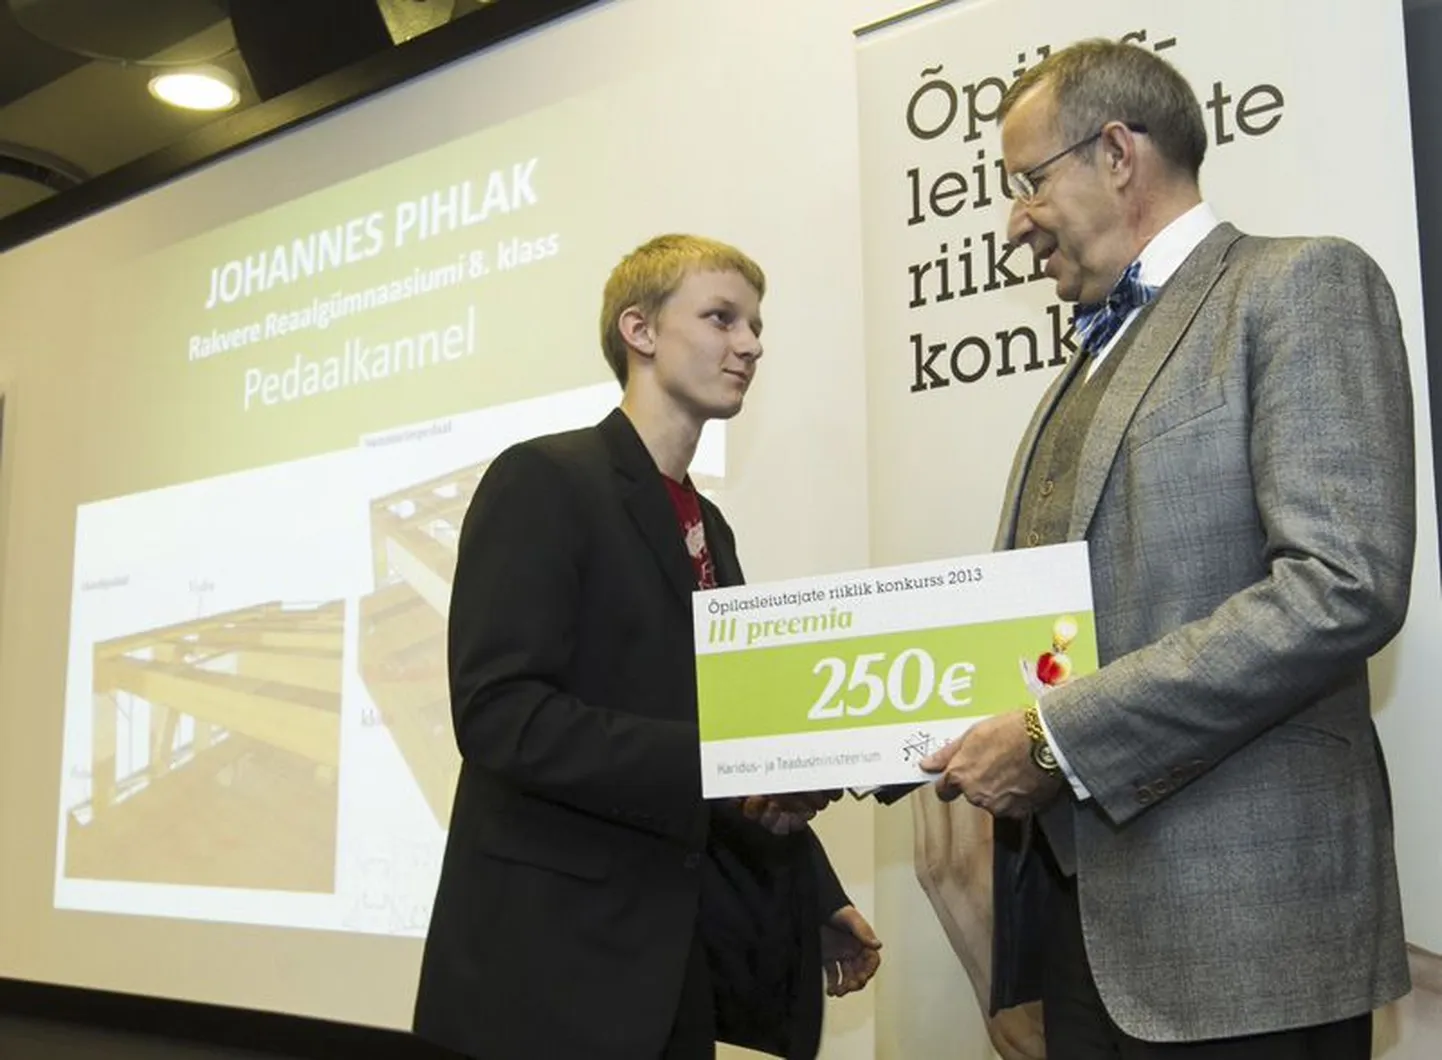 Kõik konkursil tunnustatud õpilased said käepigistuse president Toomas Hendrik Ilveselt, teiste hulgas ka Rakvere reaalgümnaasiumi 8. klassi õpilane Johannes Pihlak.